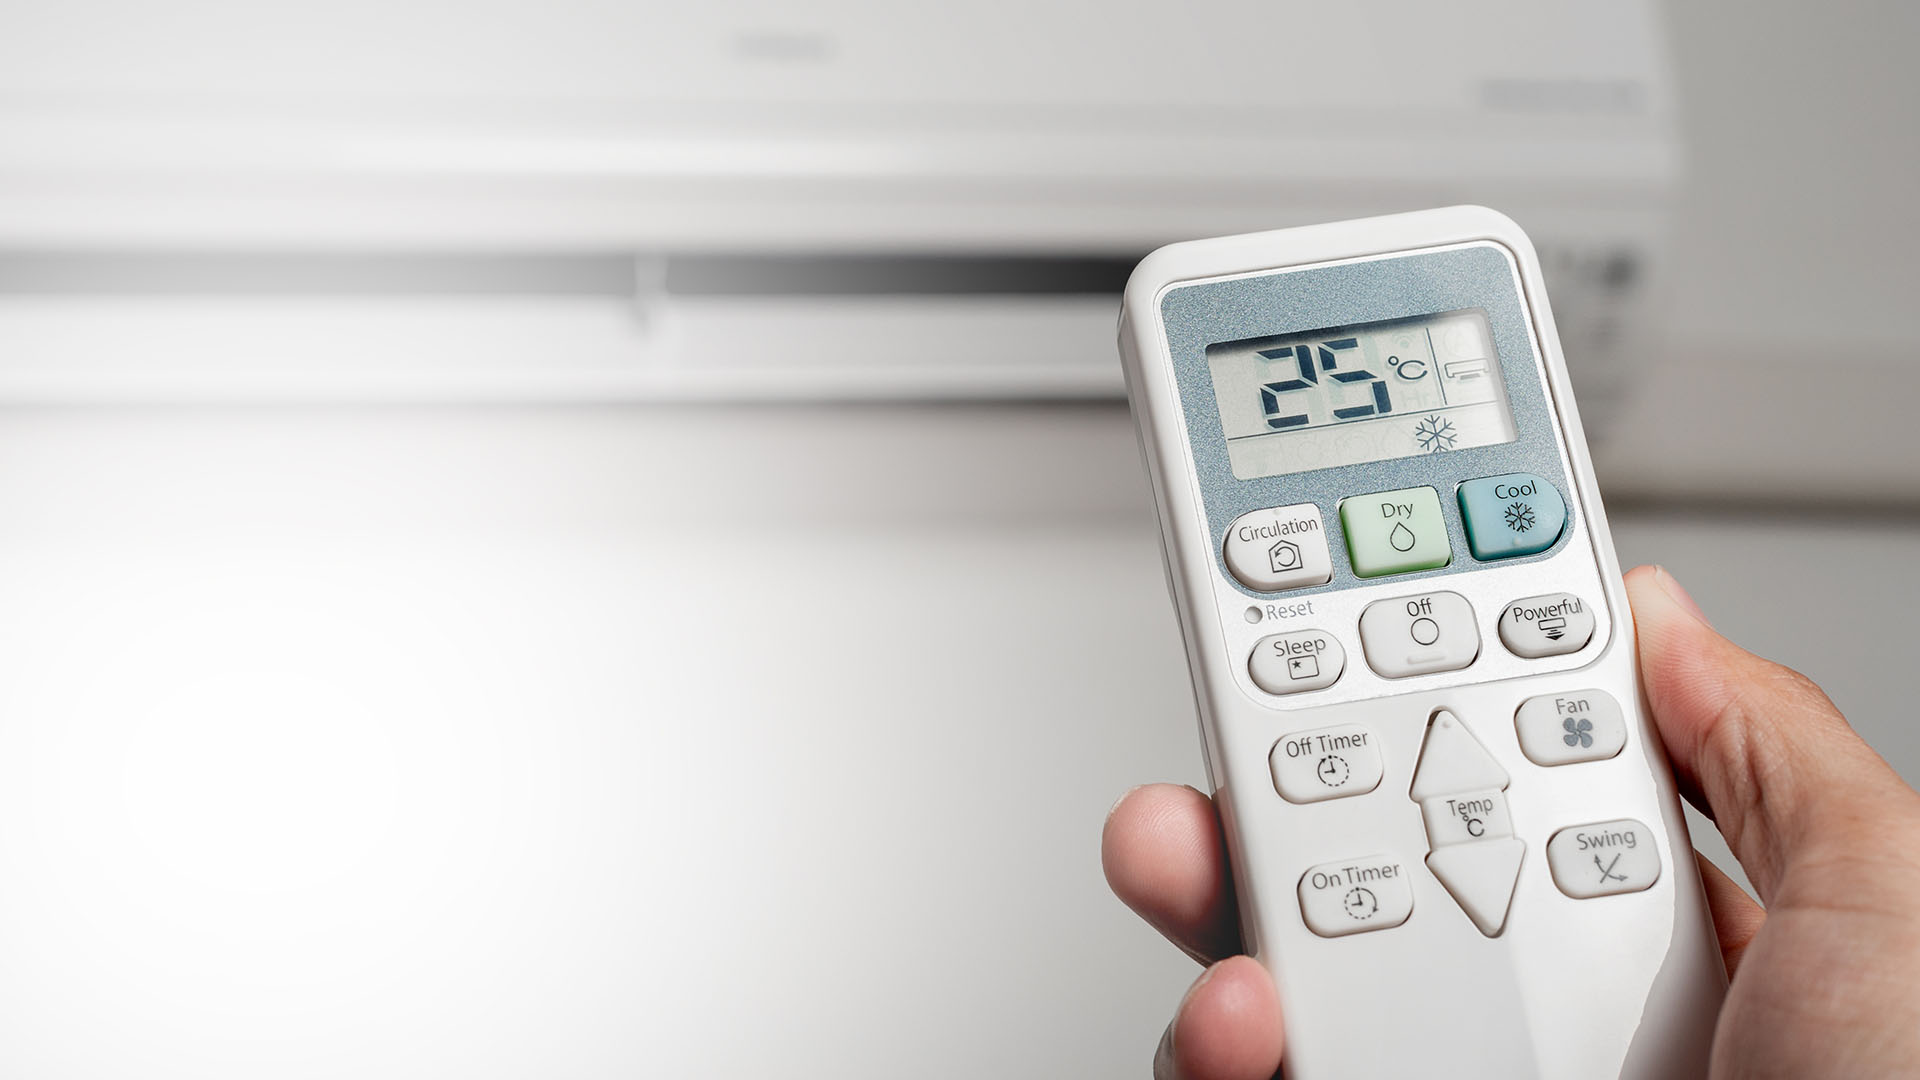 Configurar la temperatura del aire entre 24 y 26 grados ayuda a ahorrar energía sin dejar de utilizarlo. (Shutterstock)